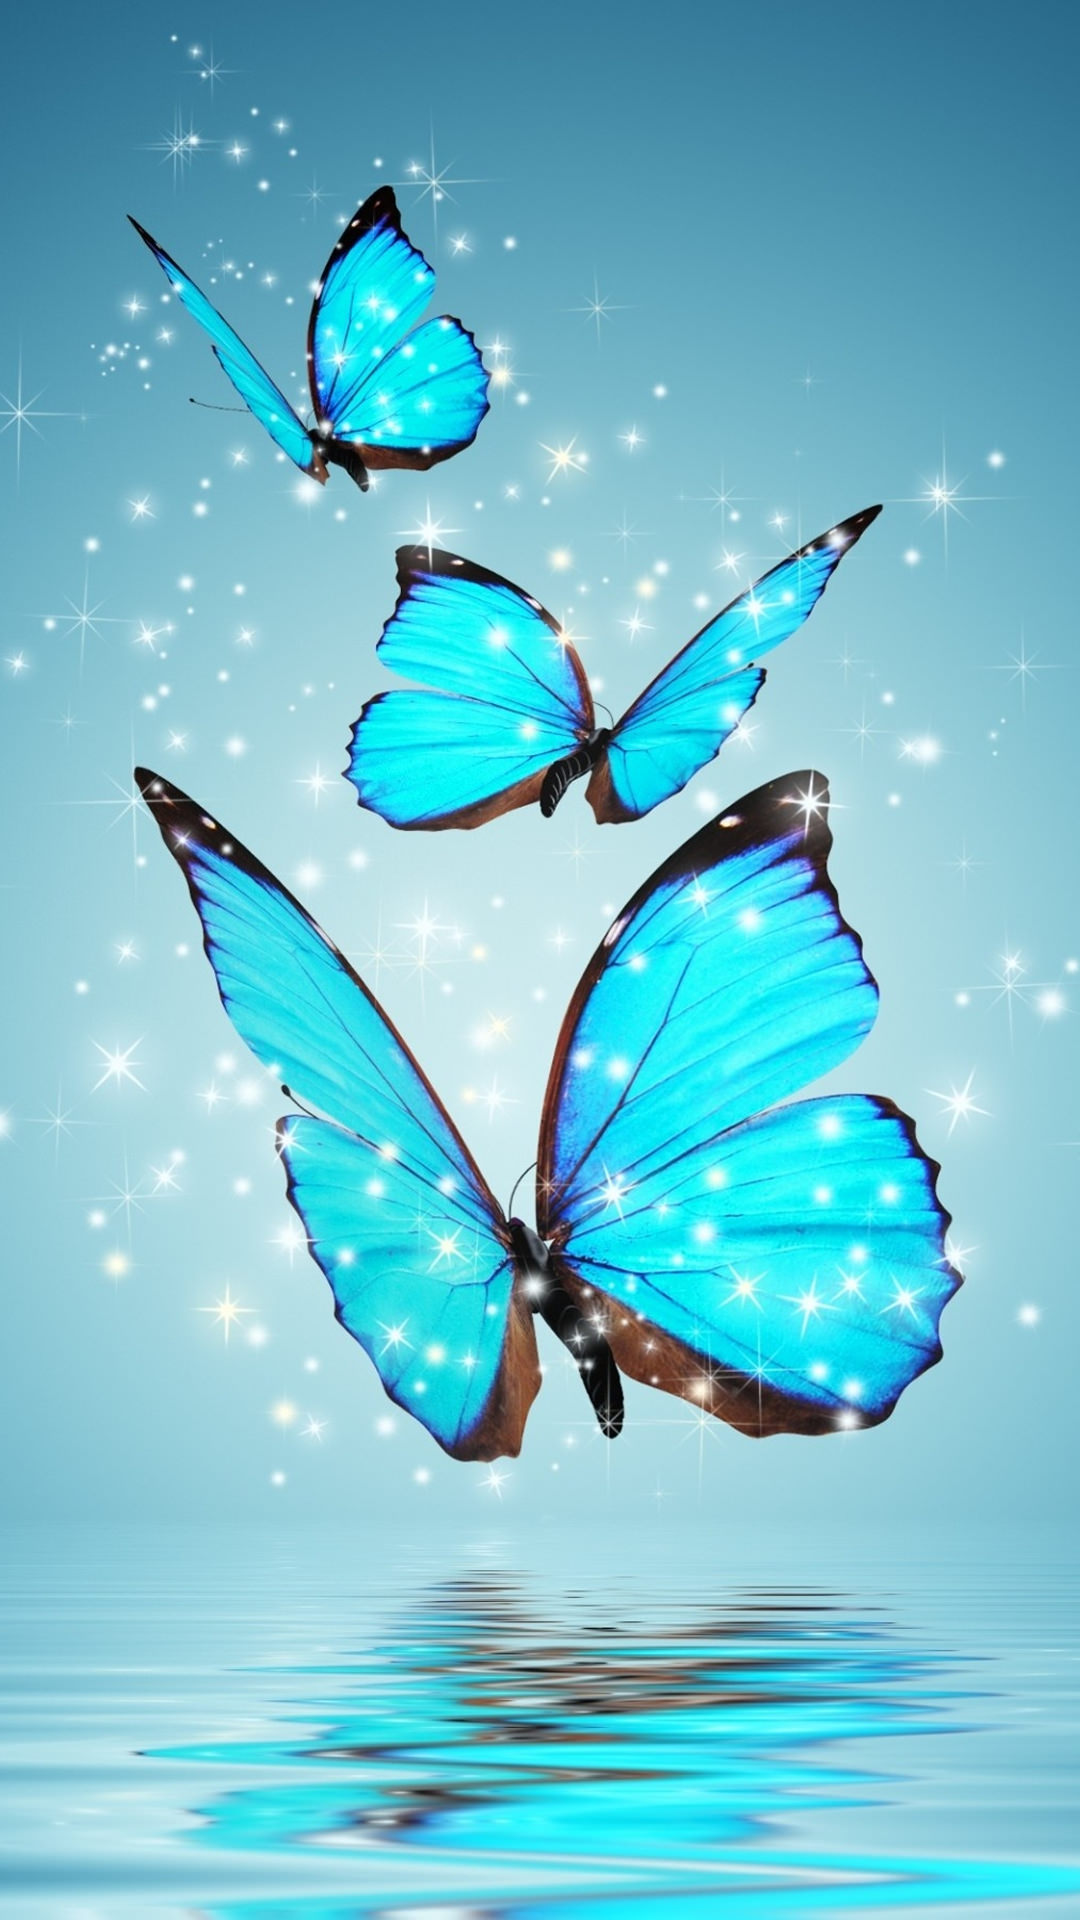 宝石のような青い蝶 Iphone12 スマホ壁紙 待受画像ギャラリー